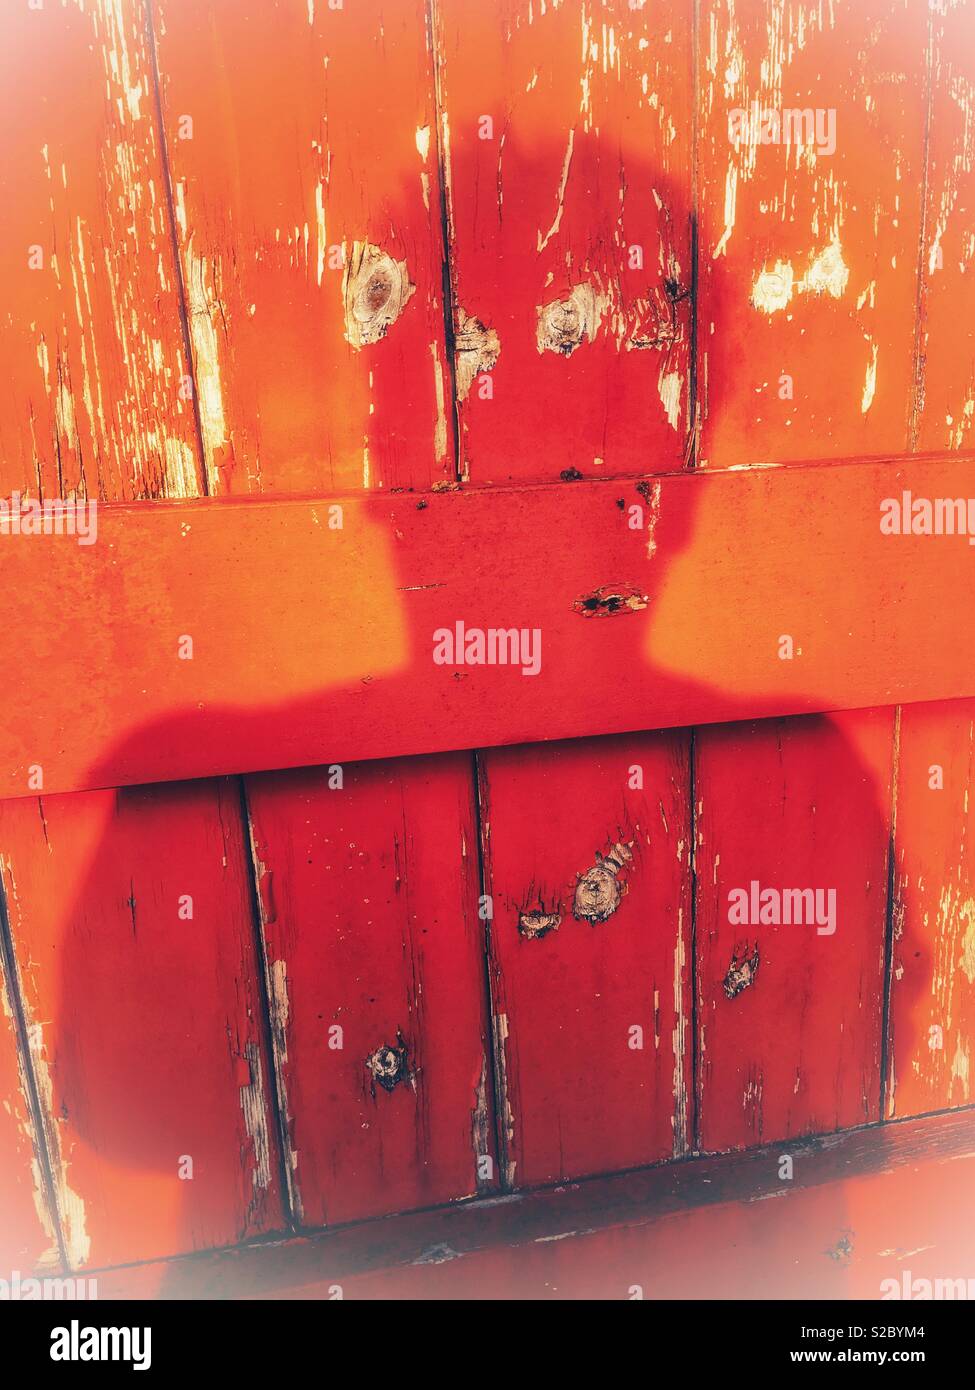 Cabeza y hombros sombra en rojo profundo contra un panel de madera roja naranja Foto de stock